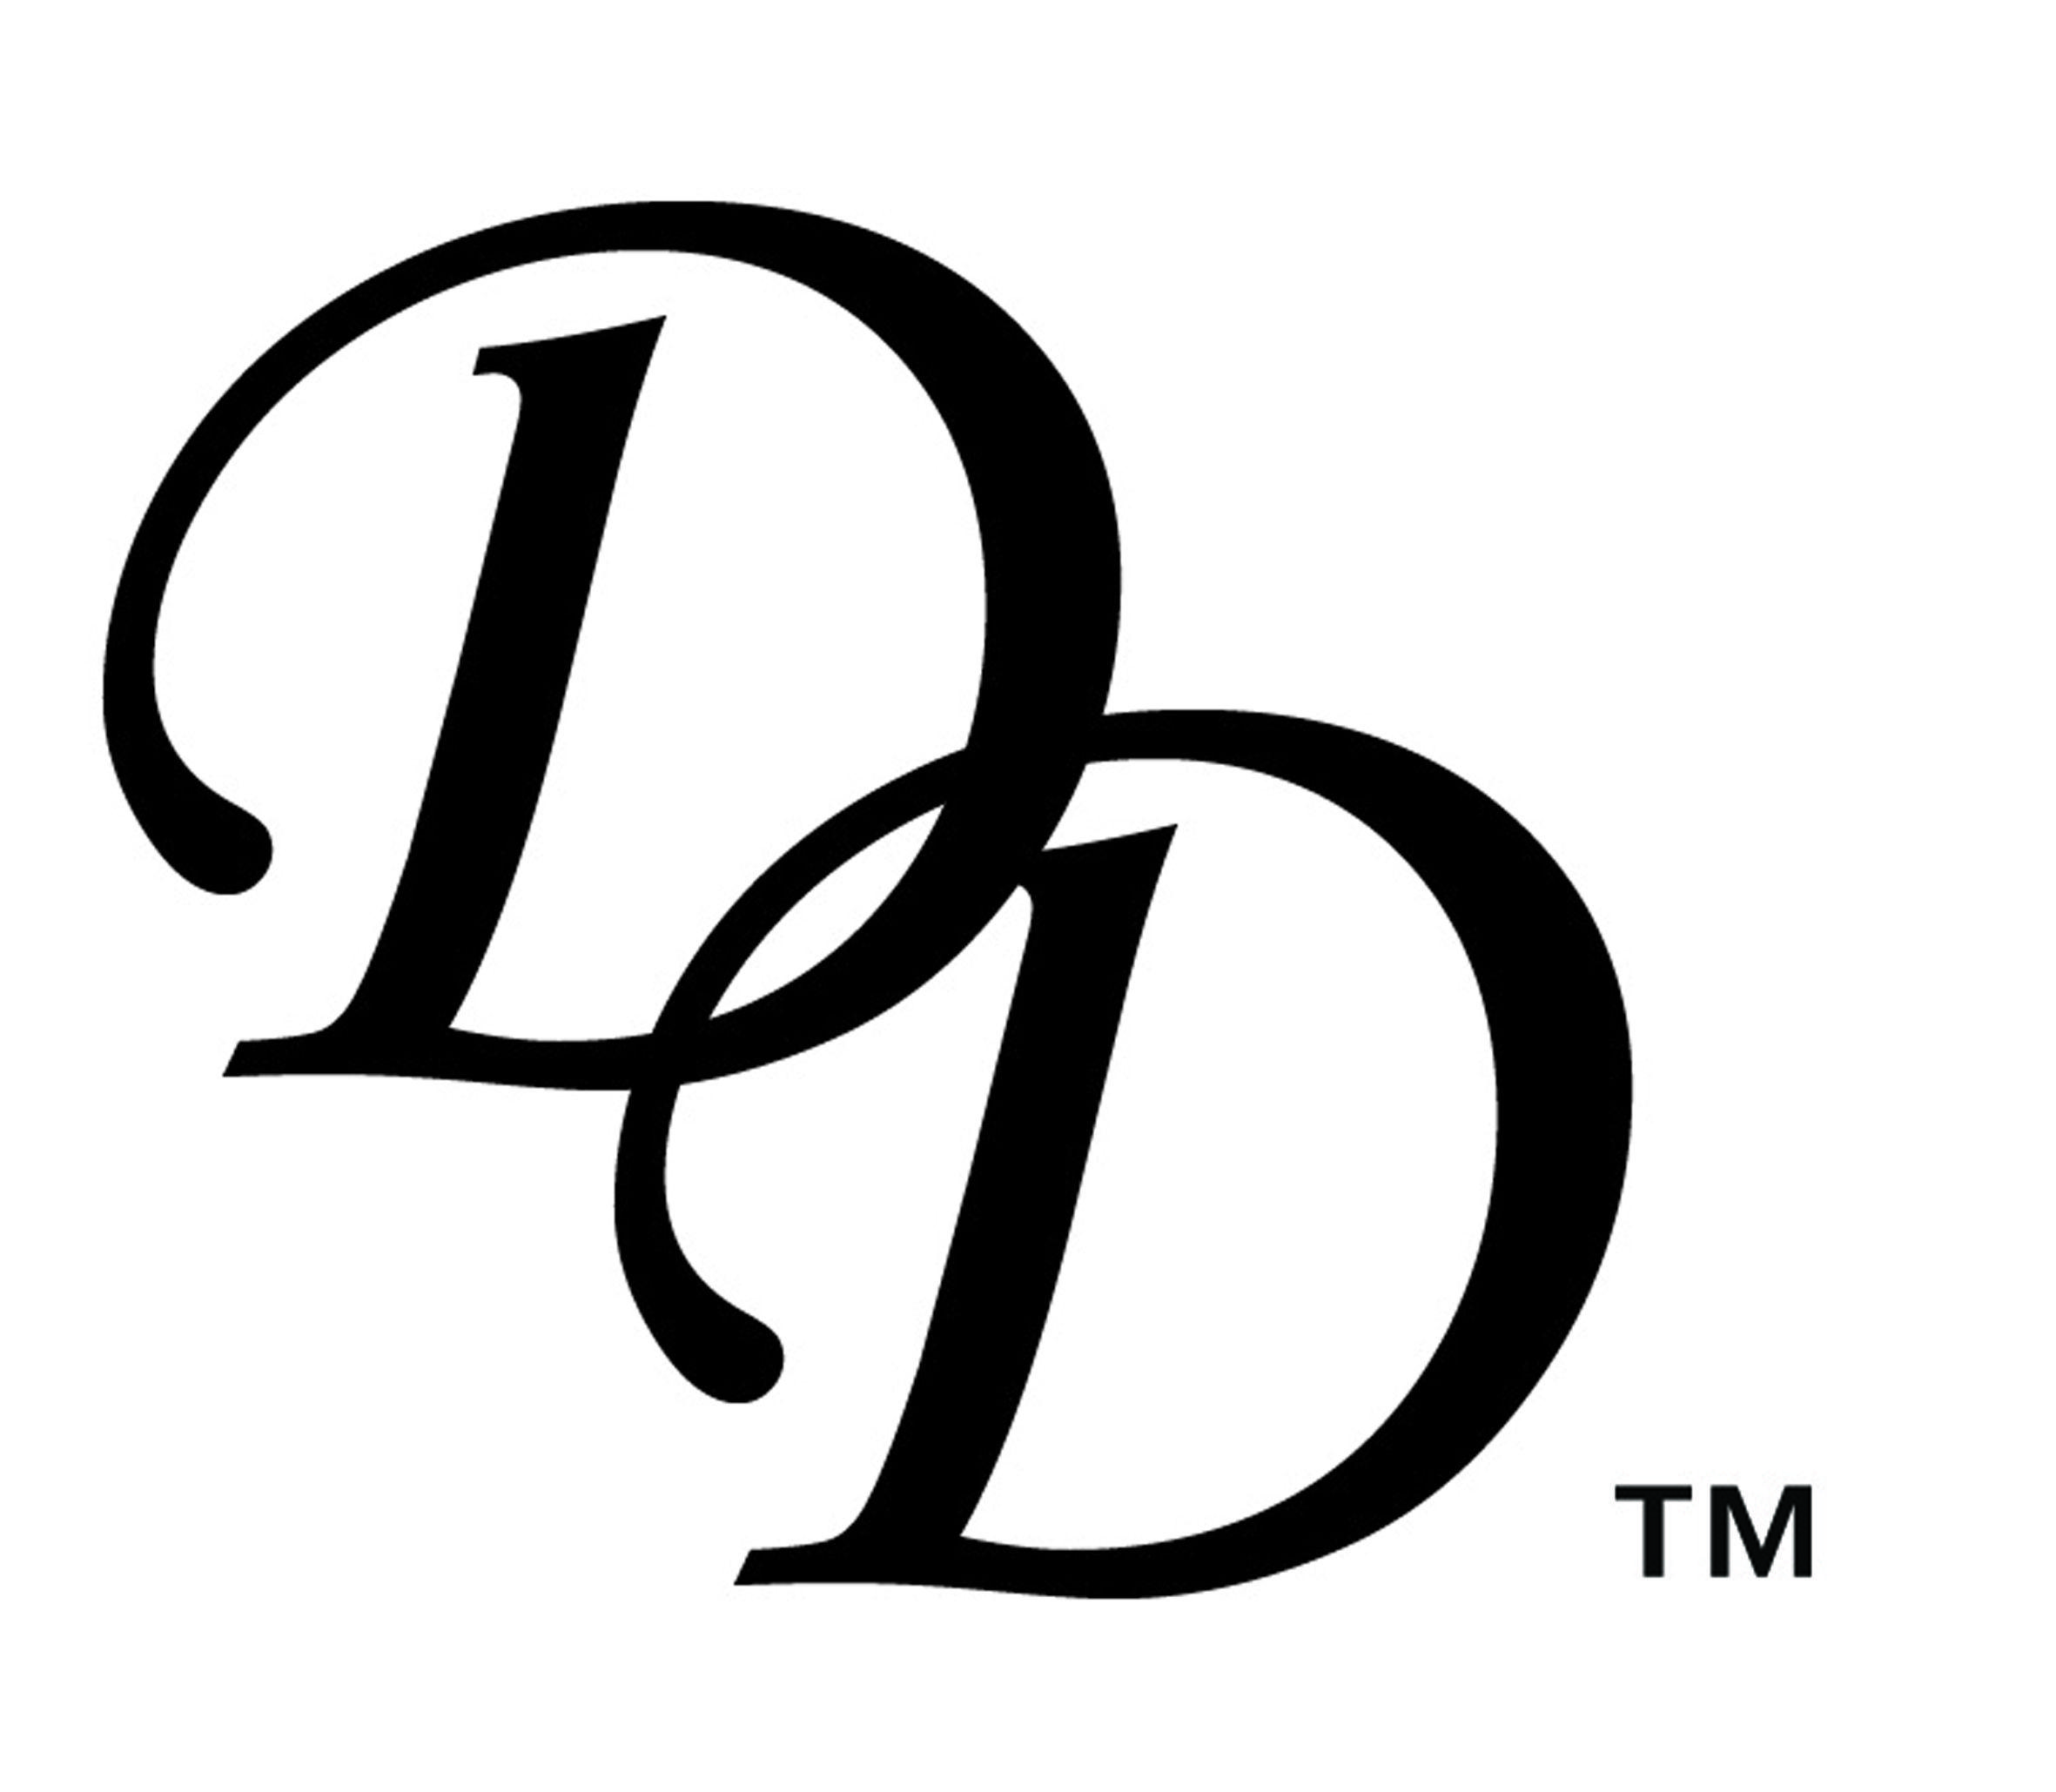 dd-logo-logodix